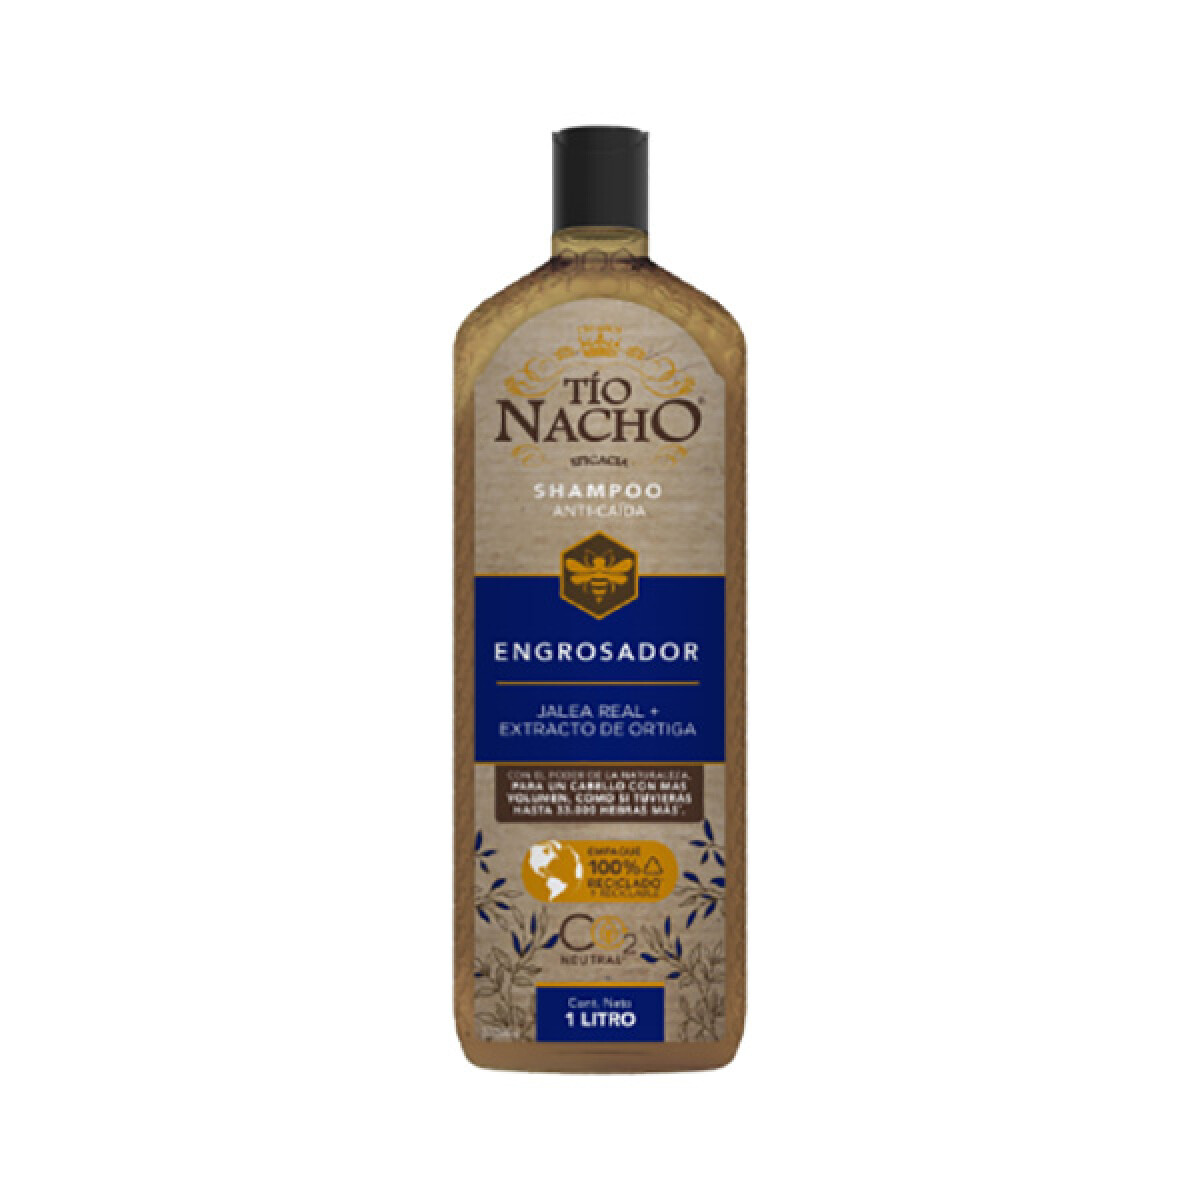 Shampoo Tío Nacho 1 Litro - Engrosador 